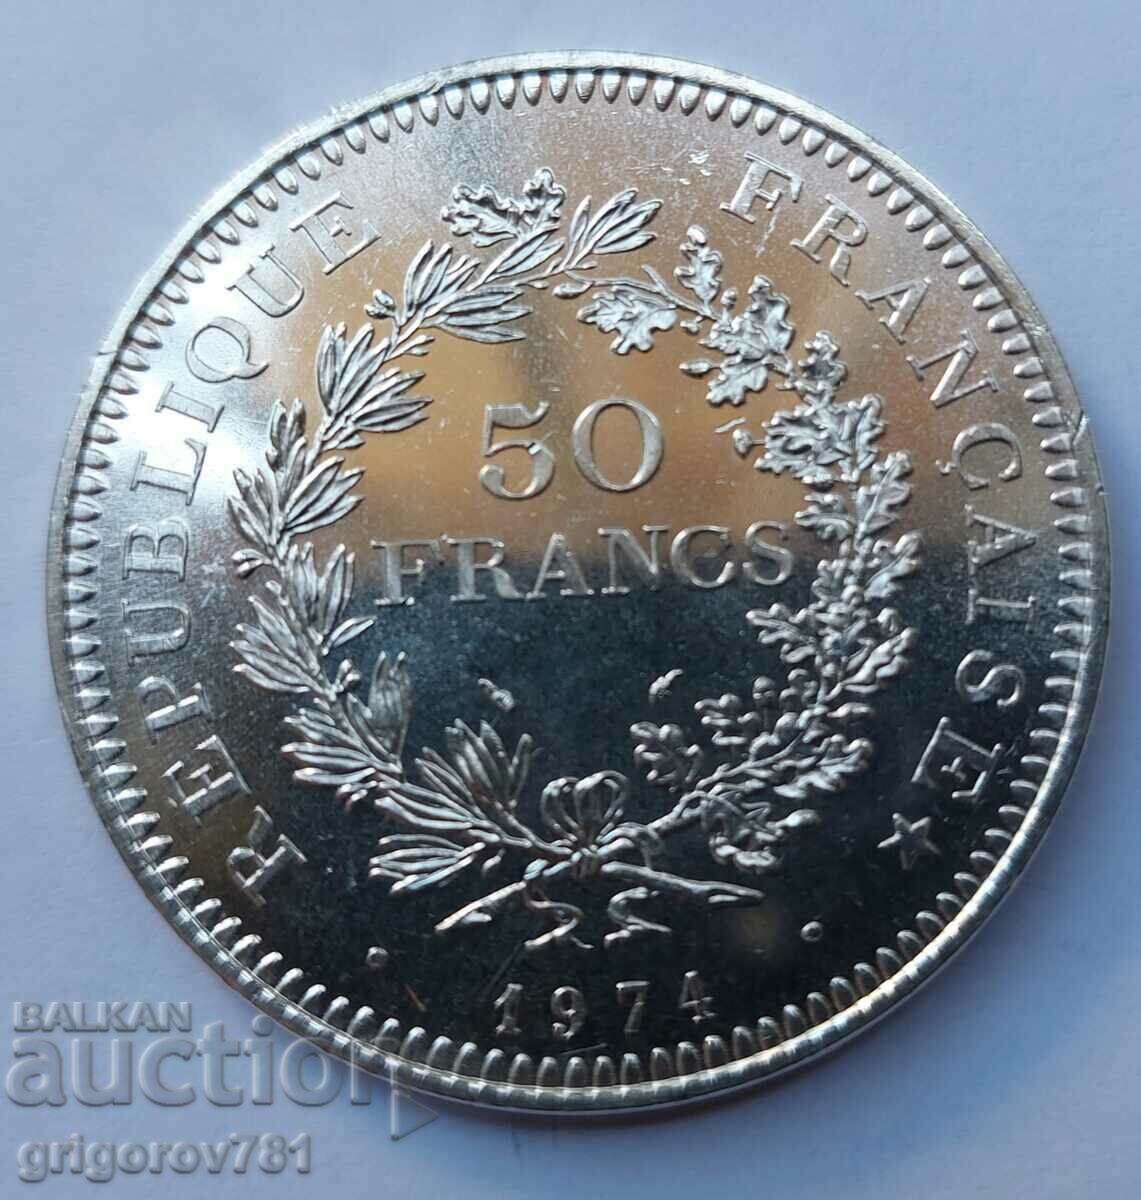 50 Φράγκα Ασημένιο Γαλλία 1974 - Ασημένιο νόμισμα #20